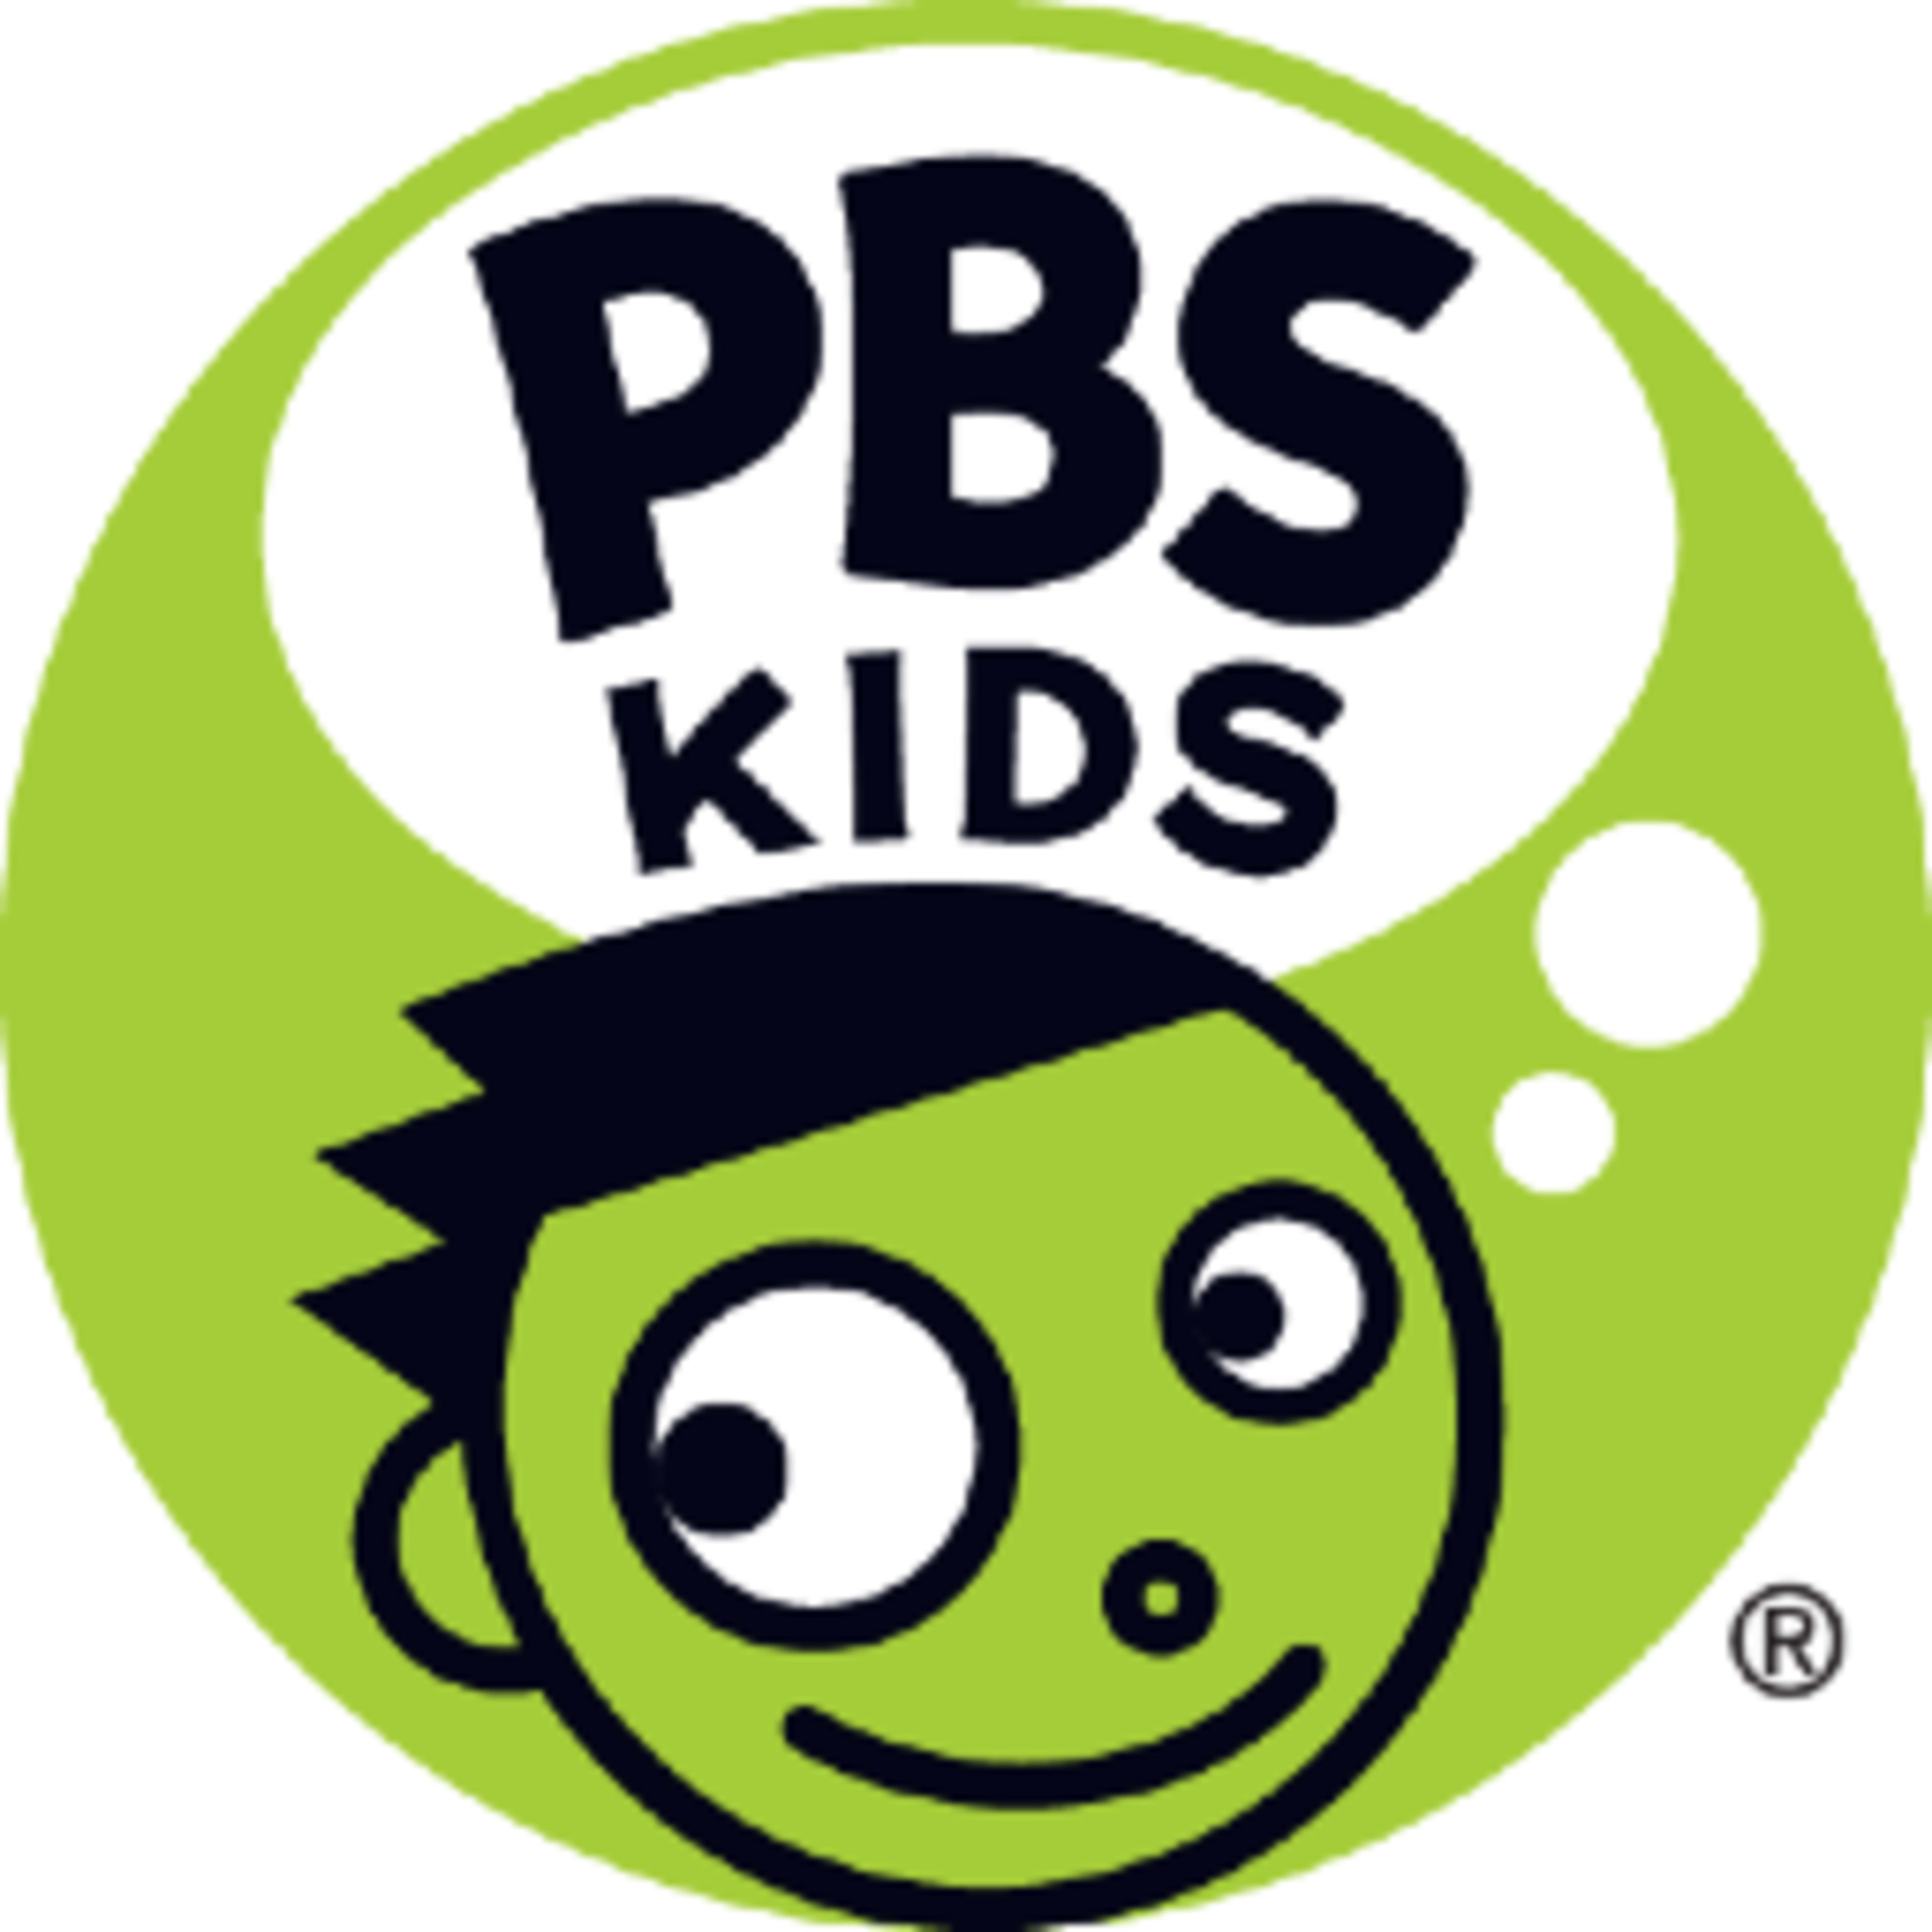 PBS KIDS ShopCode